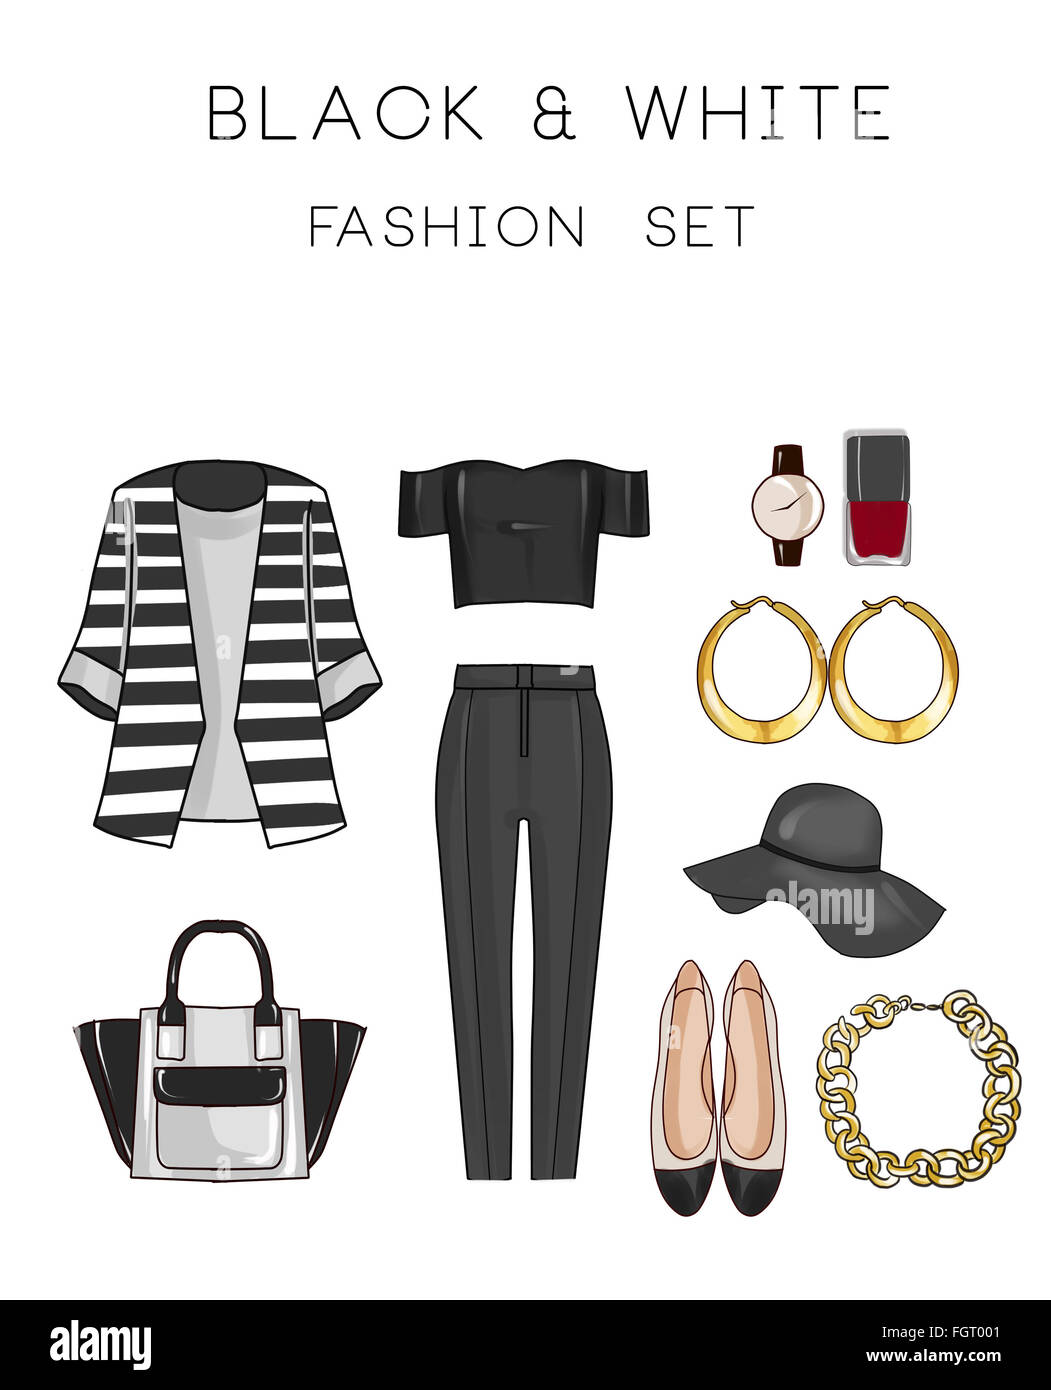 Juego de moda ropa y accesorios mujer - blanco y negro - pantalones, top, zapatos joyas, bolsa Fotografía de stock - Alamy